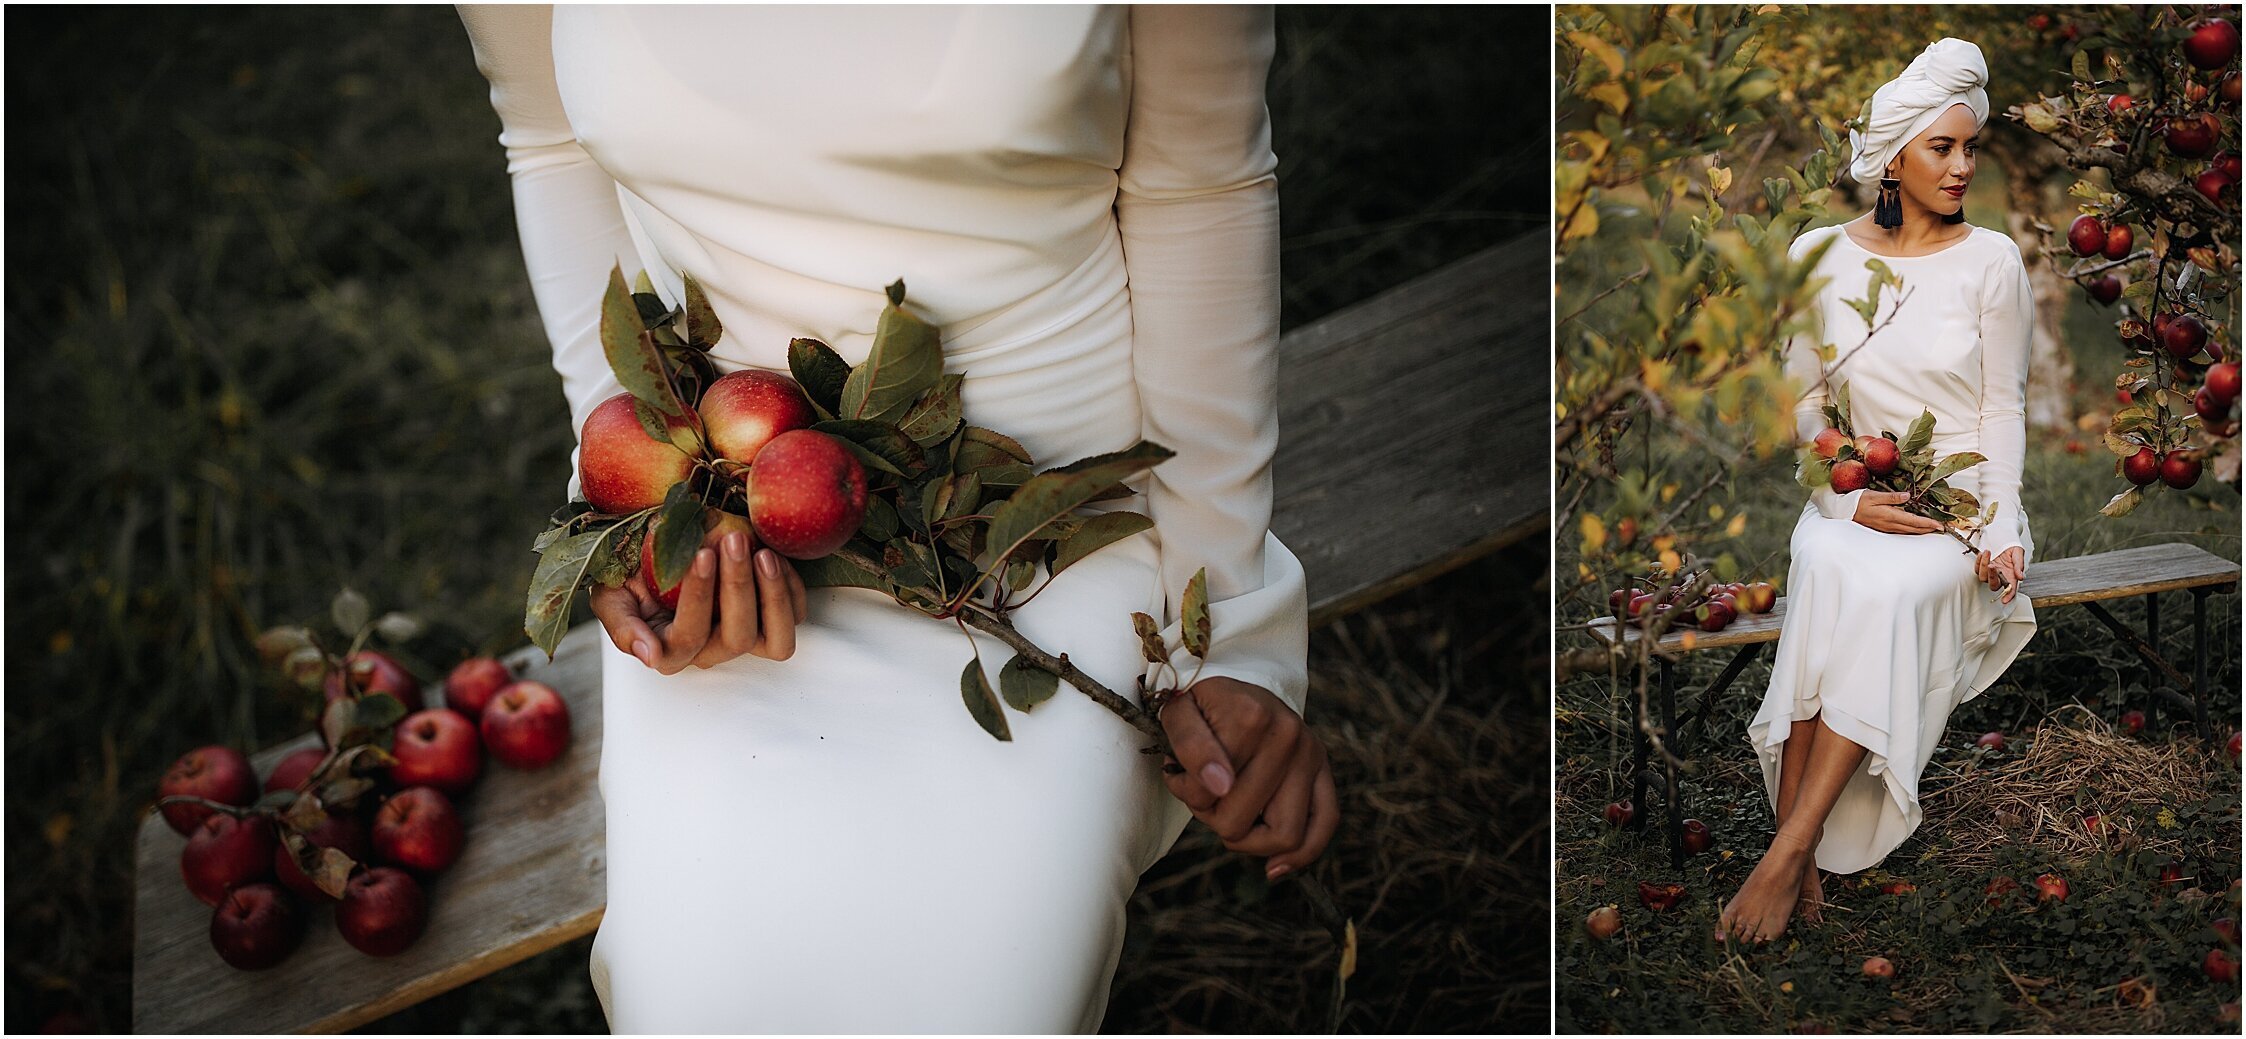 Zanda+Auckland+wedding+photographer+unique+portrait+photoshoot+ideas+autumn+winter+Windmill+apple+orchard+Coatesville+New+Zealand_13.jpeg